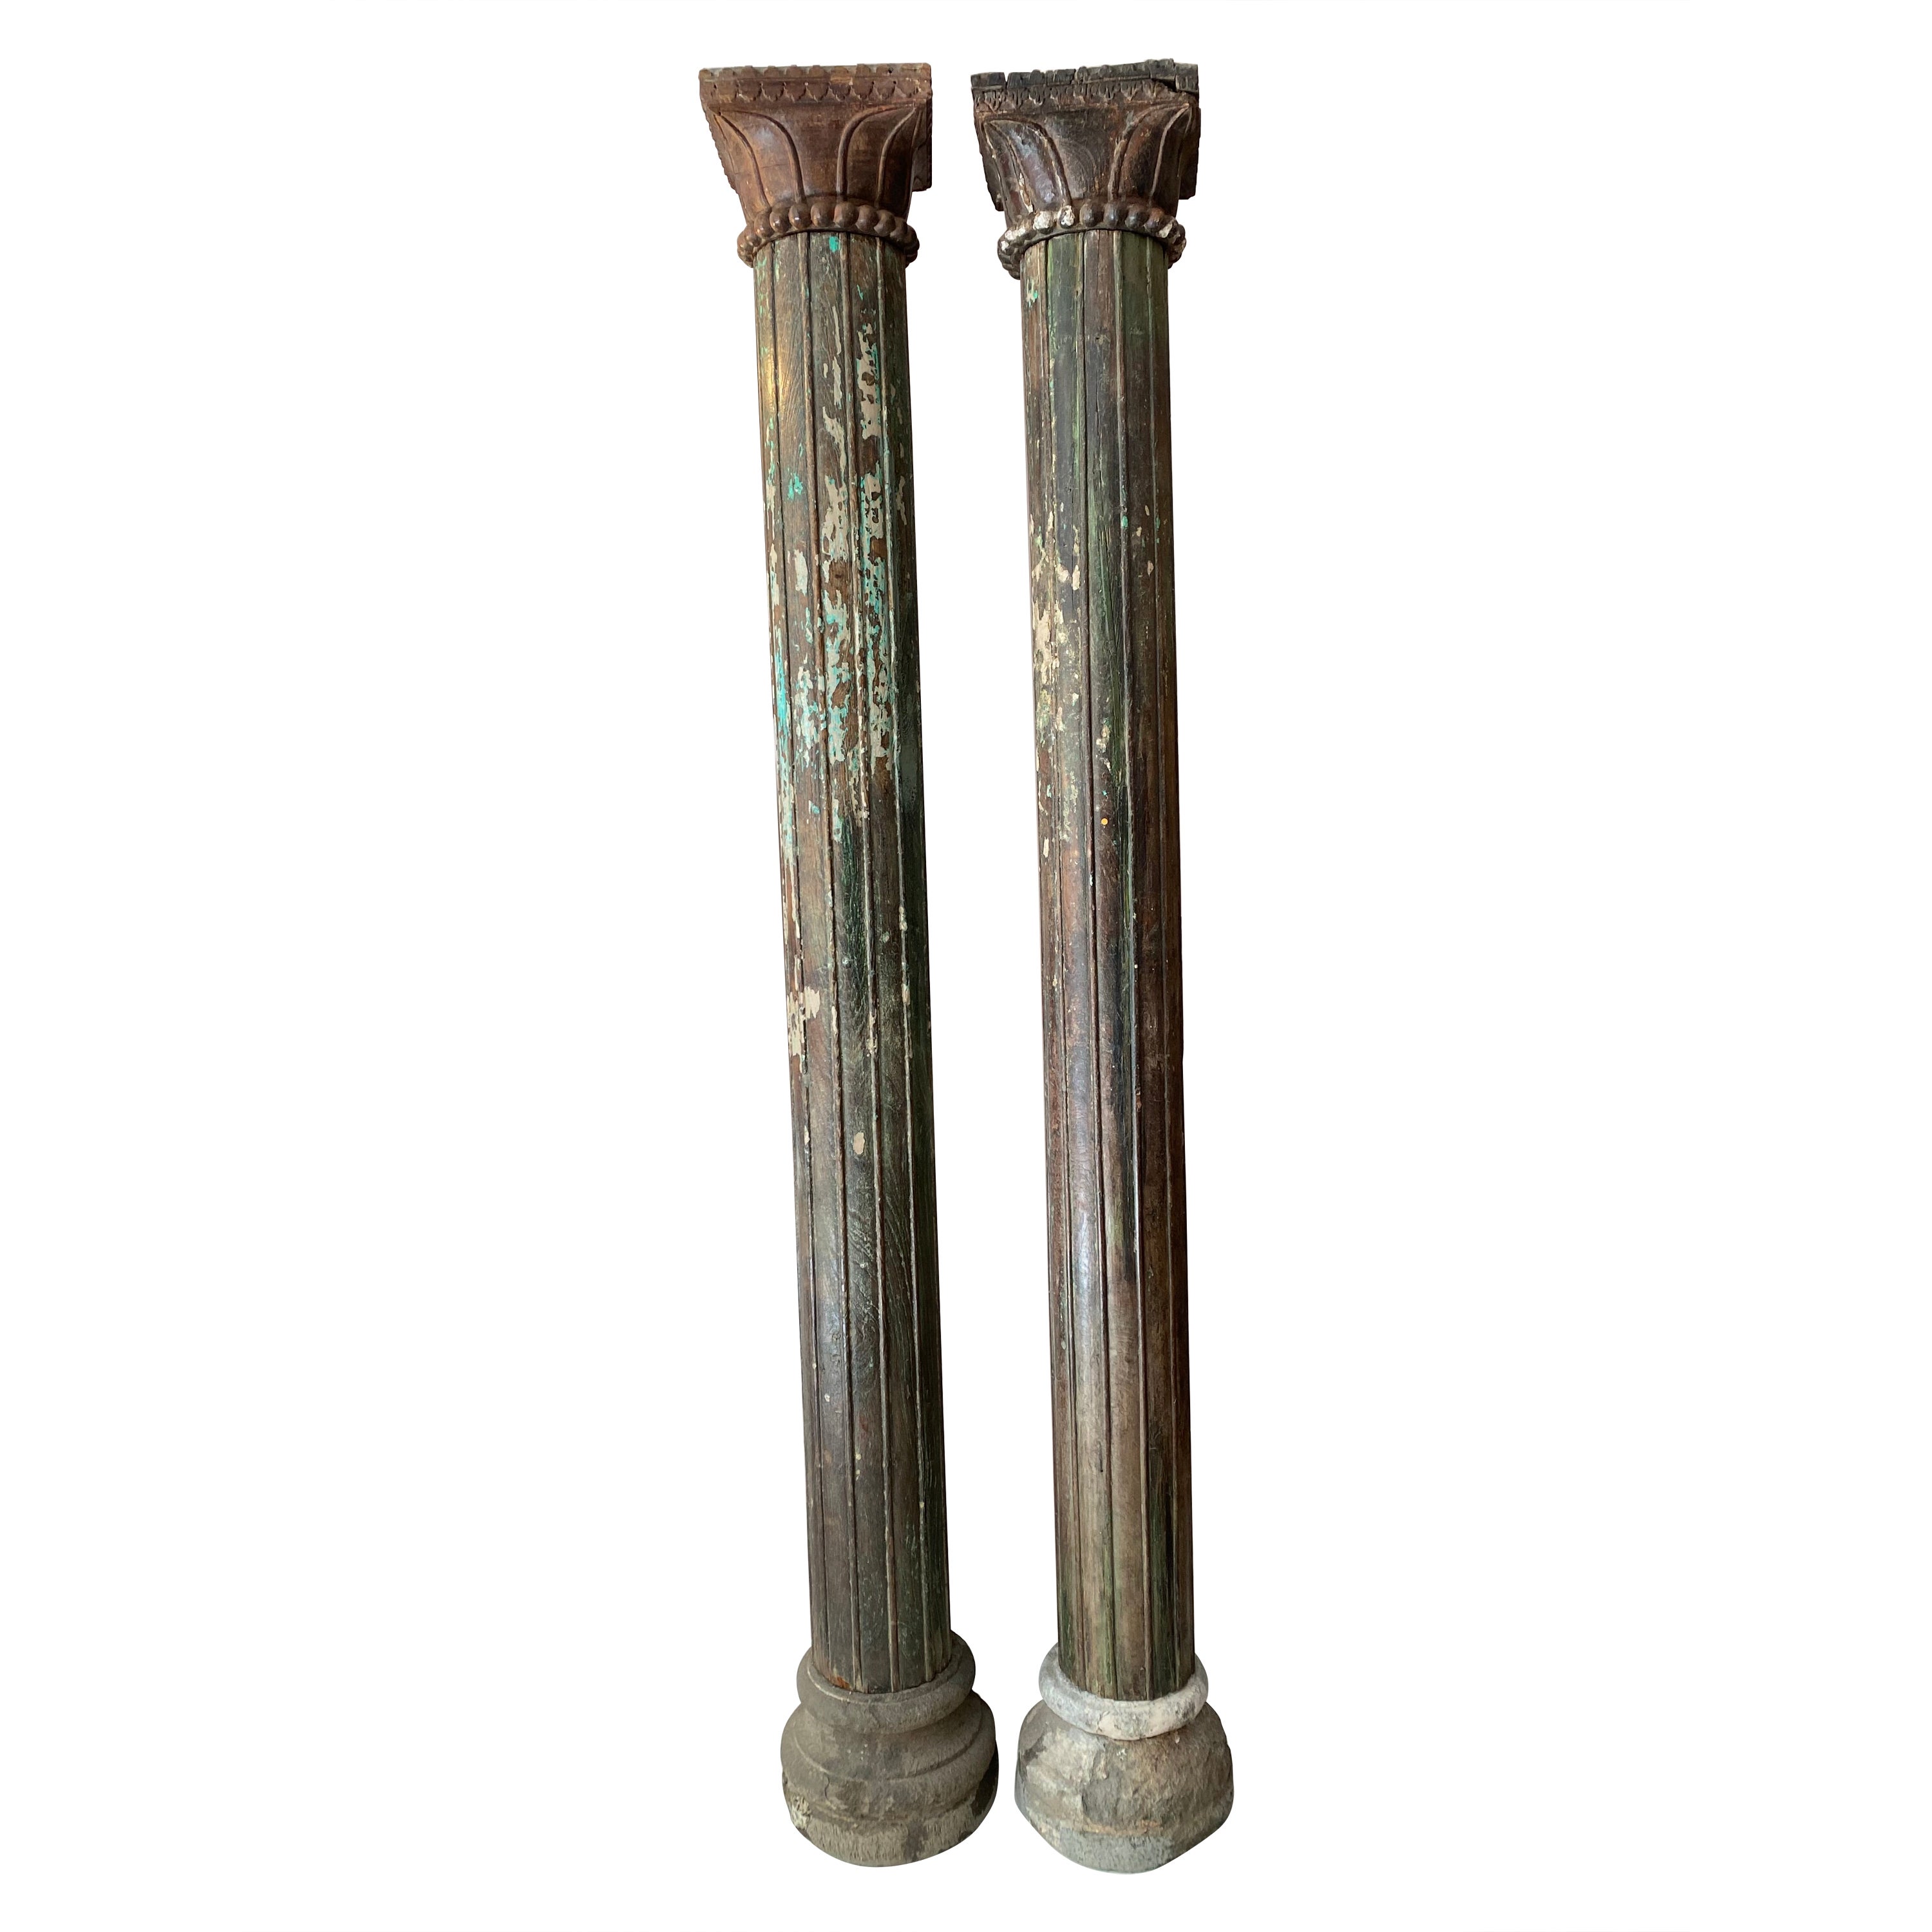 Paar indische Säulen aus Teakholz aus dem späten 19. Jahrhundert